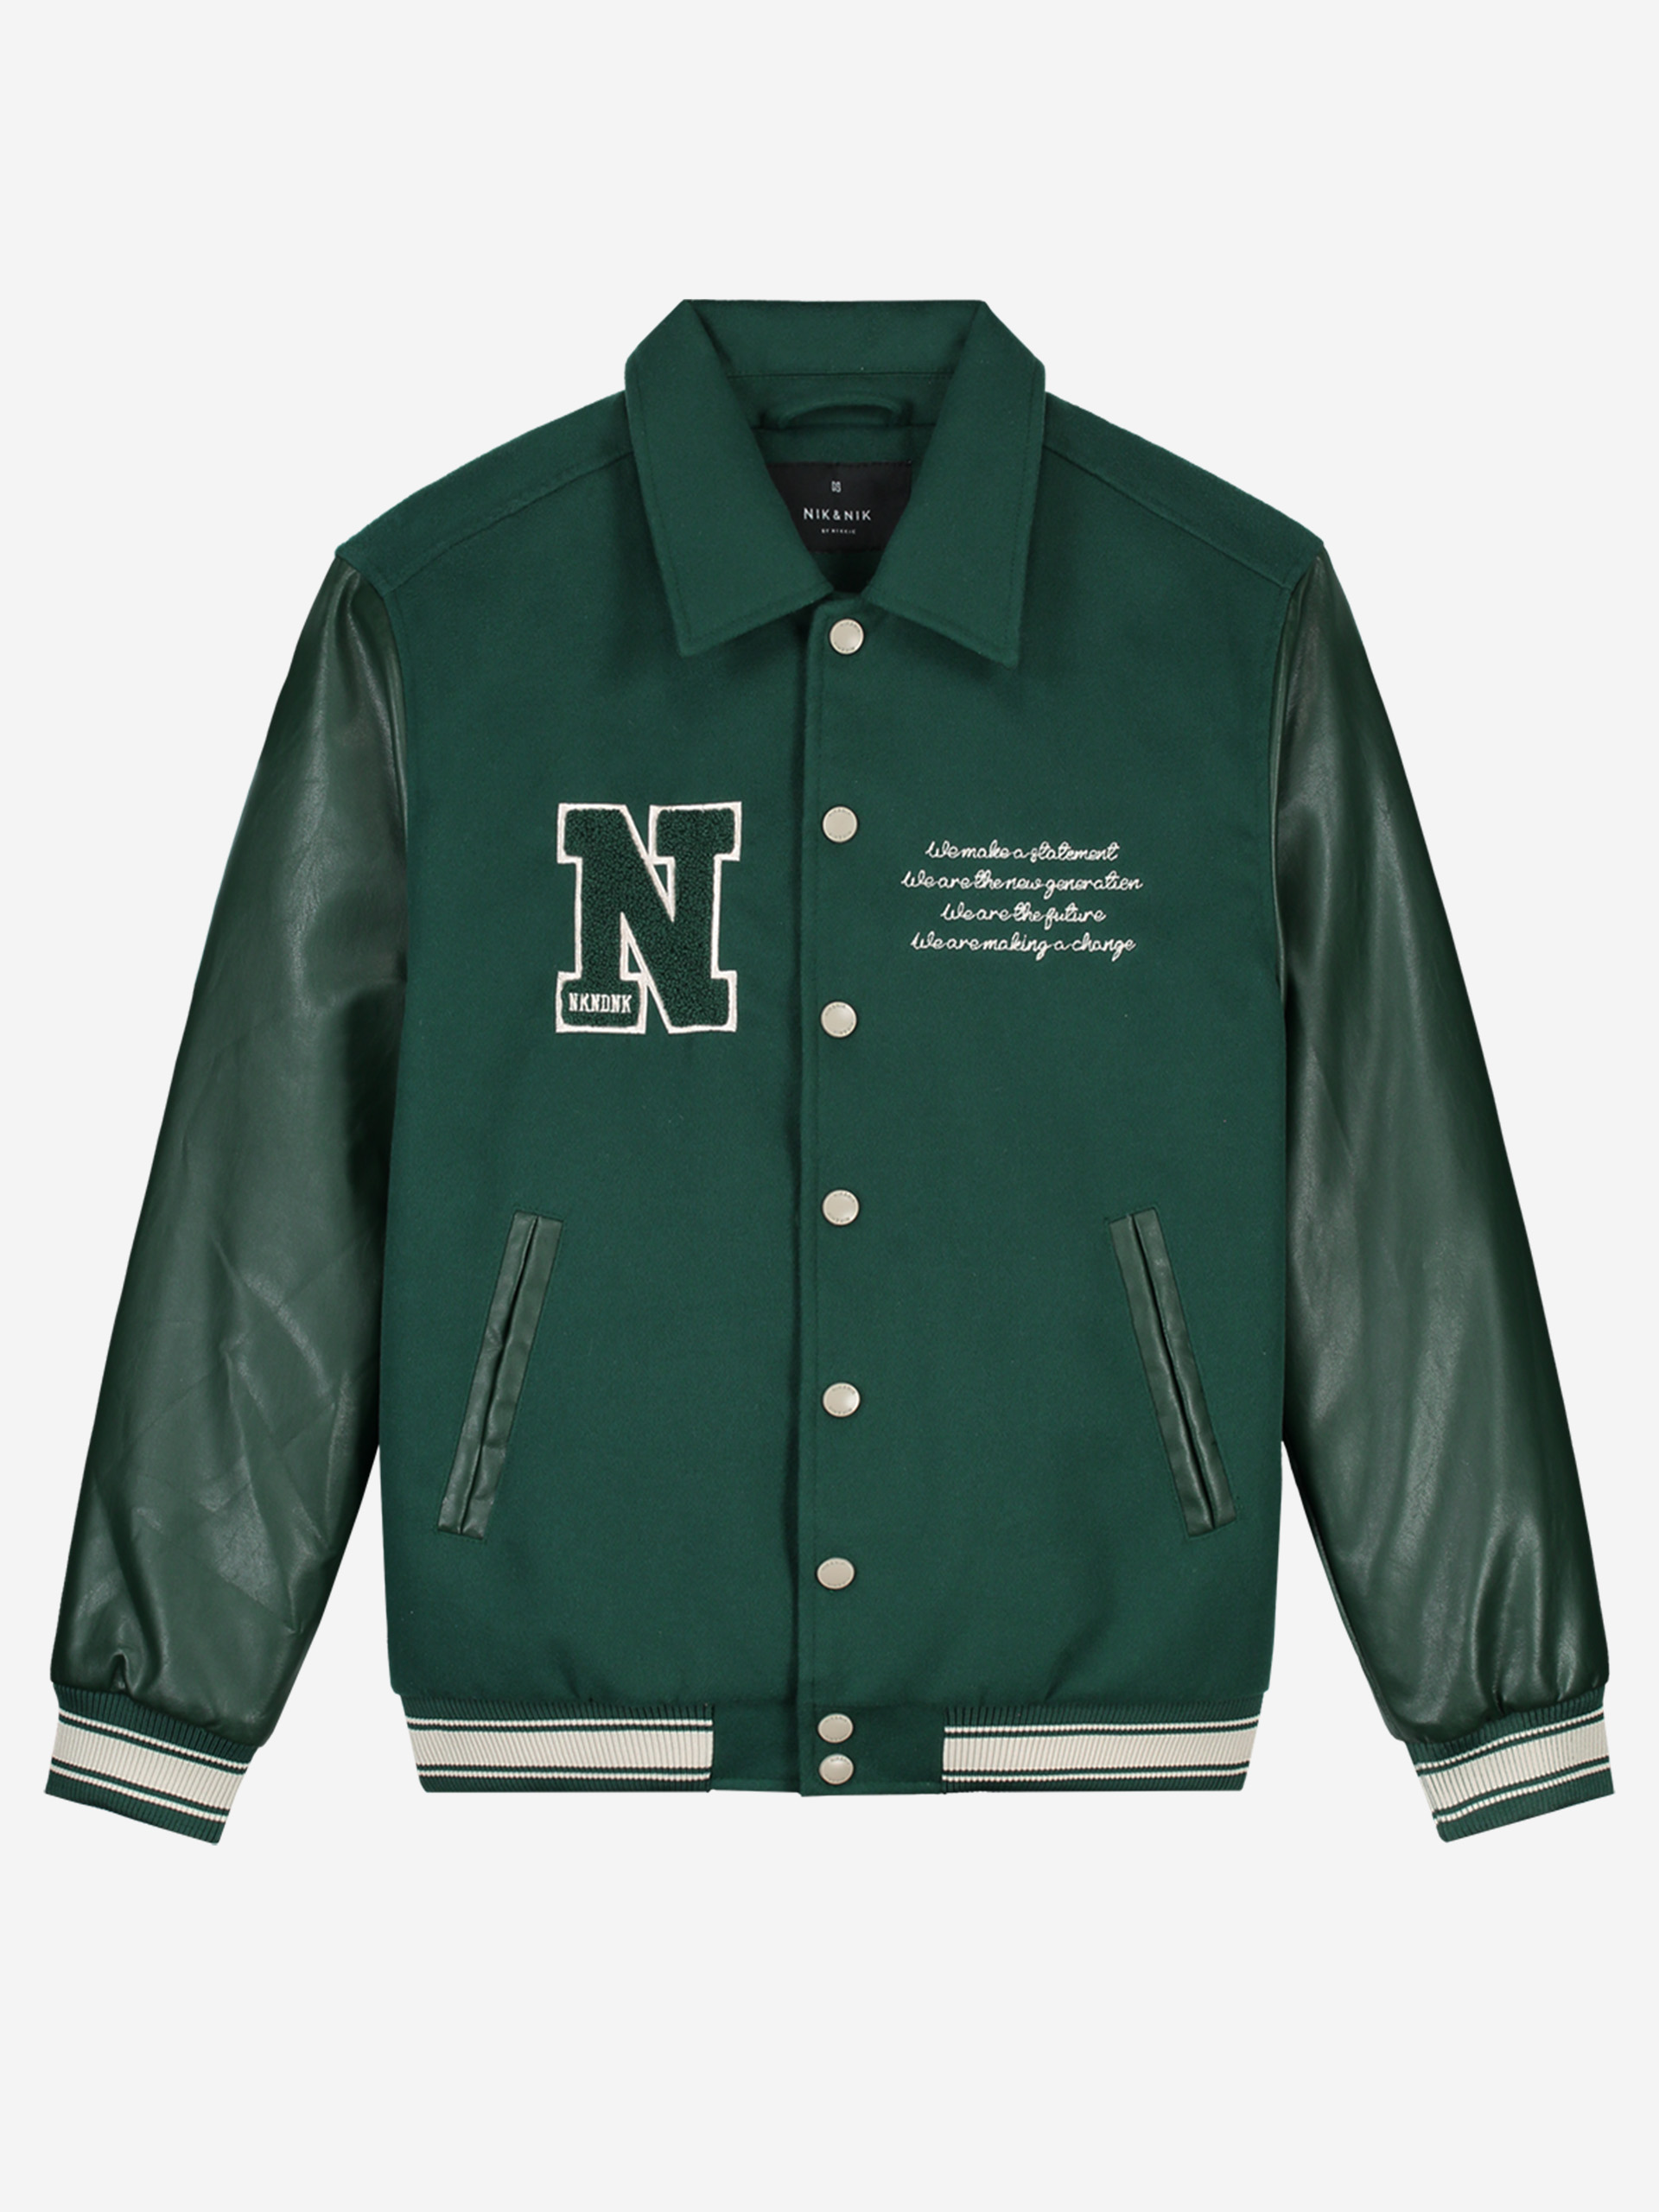 N&N baseball jacket